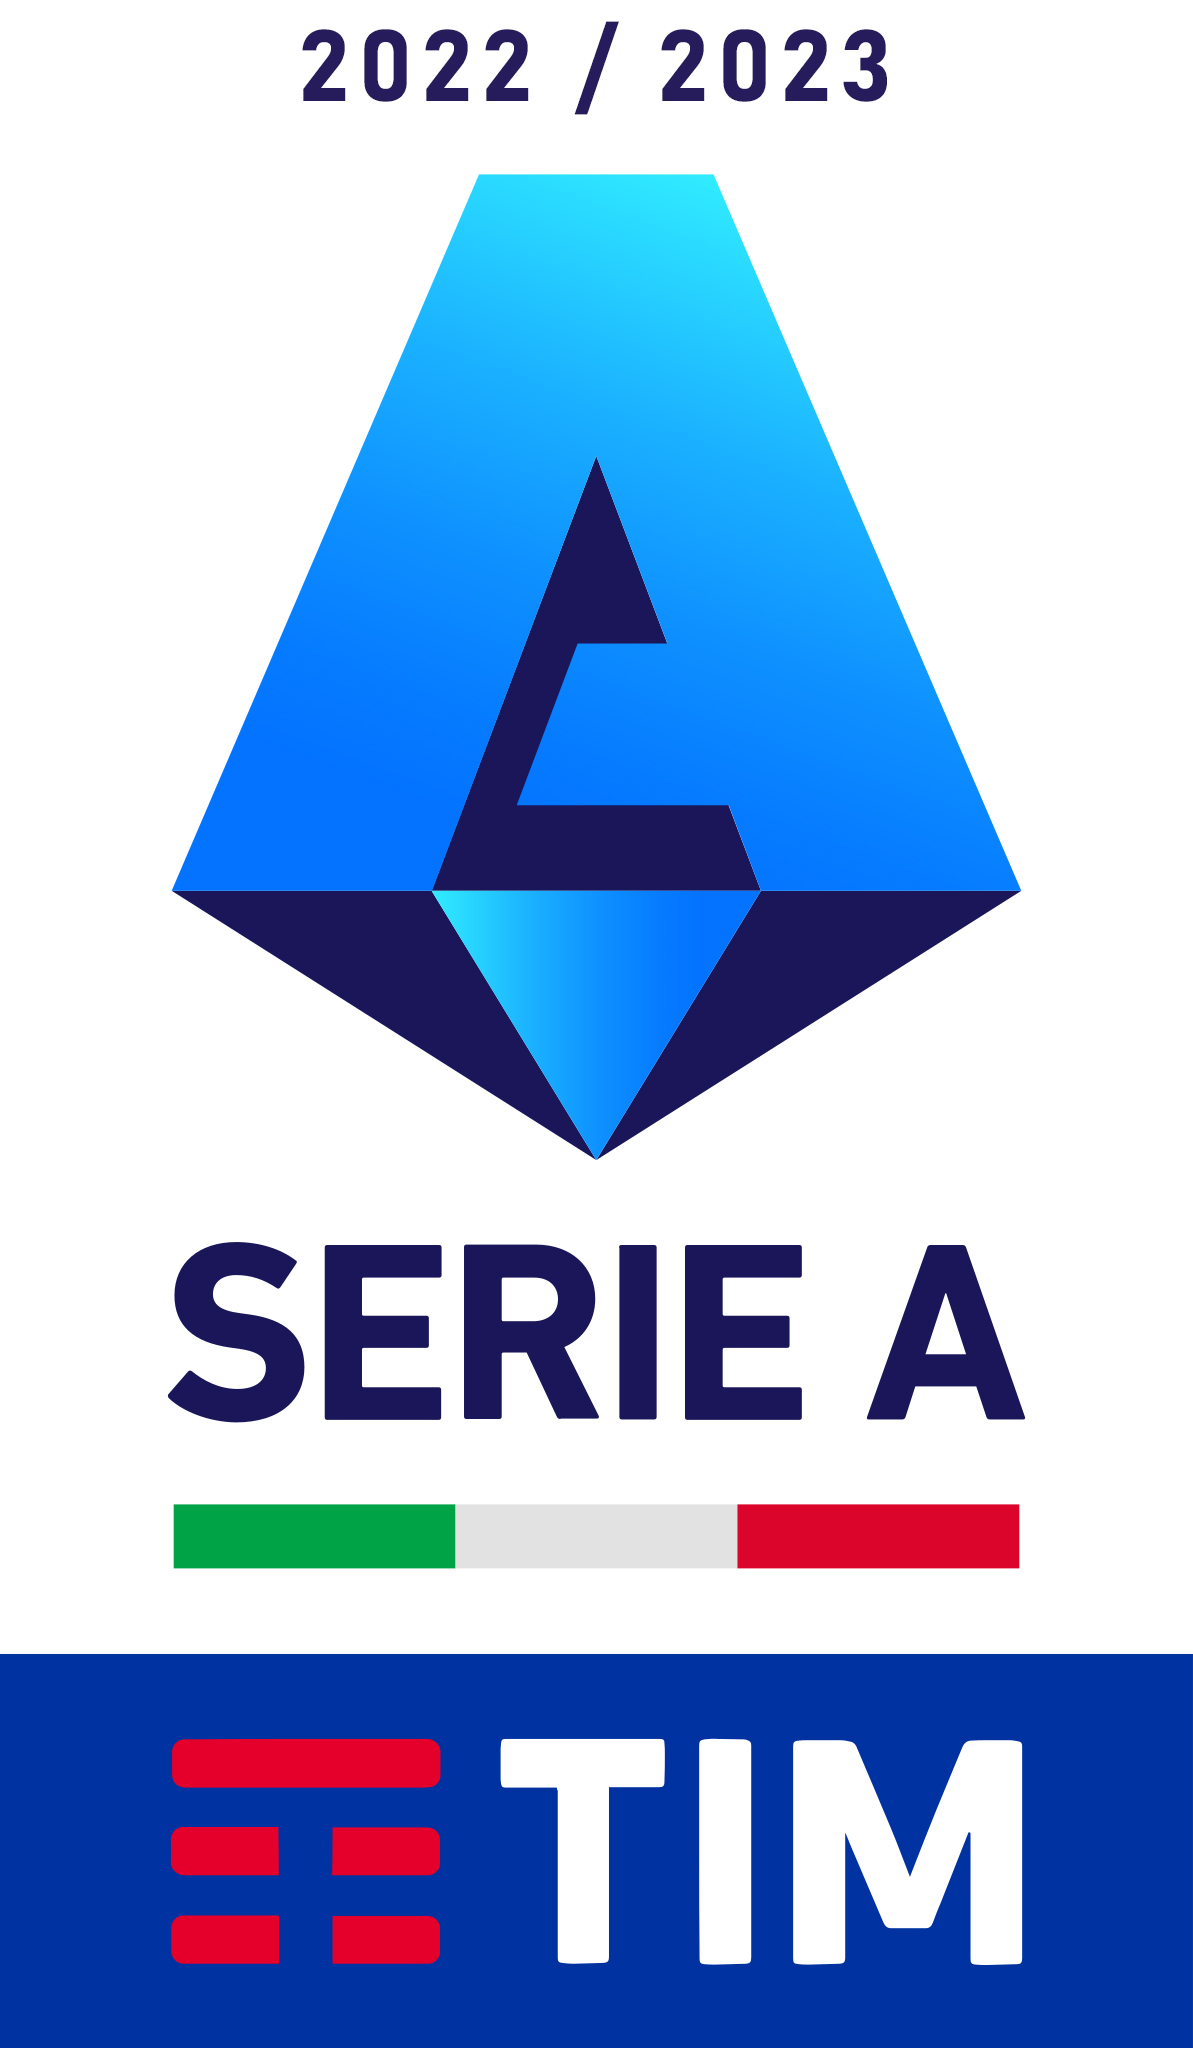 Serie A 2022-2023 - Wikipedia